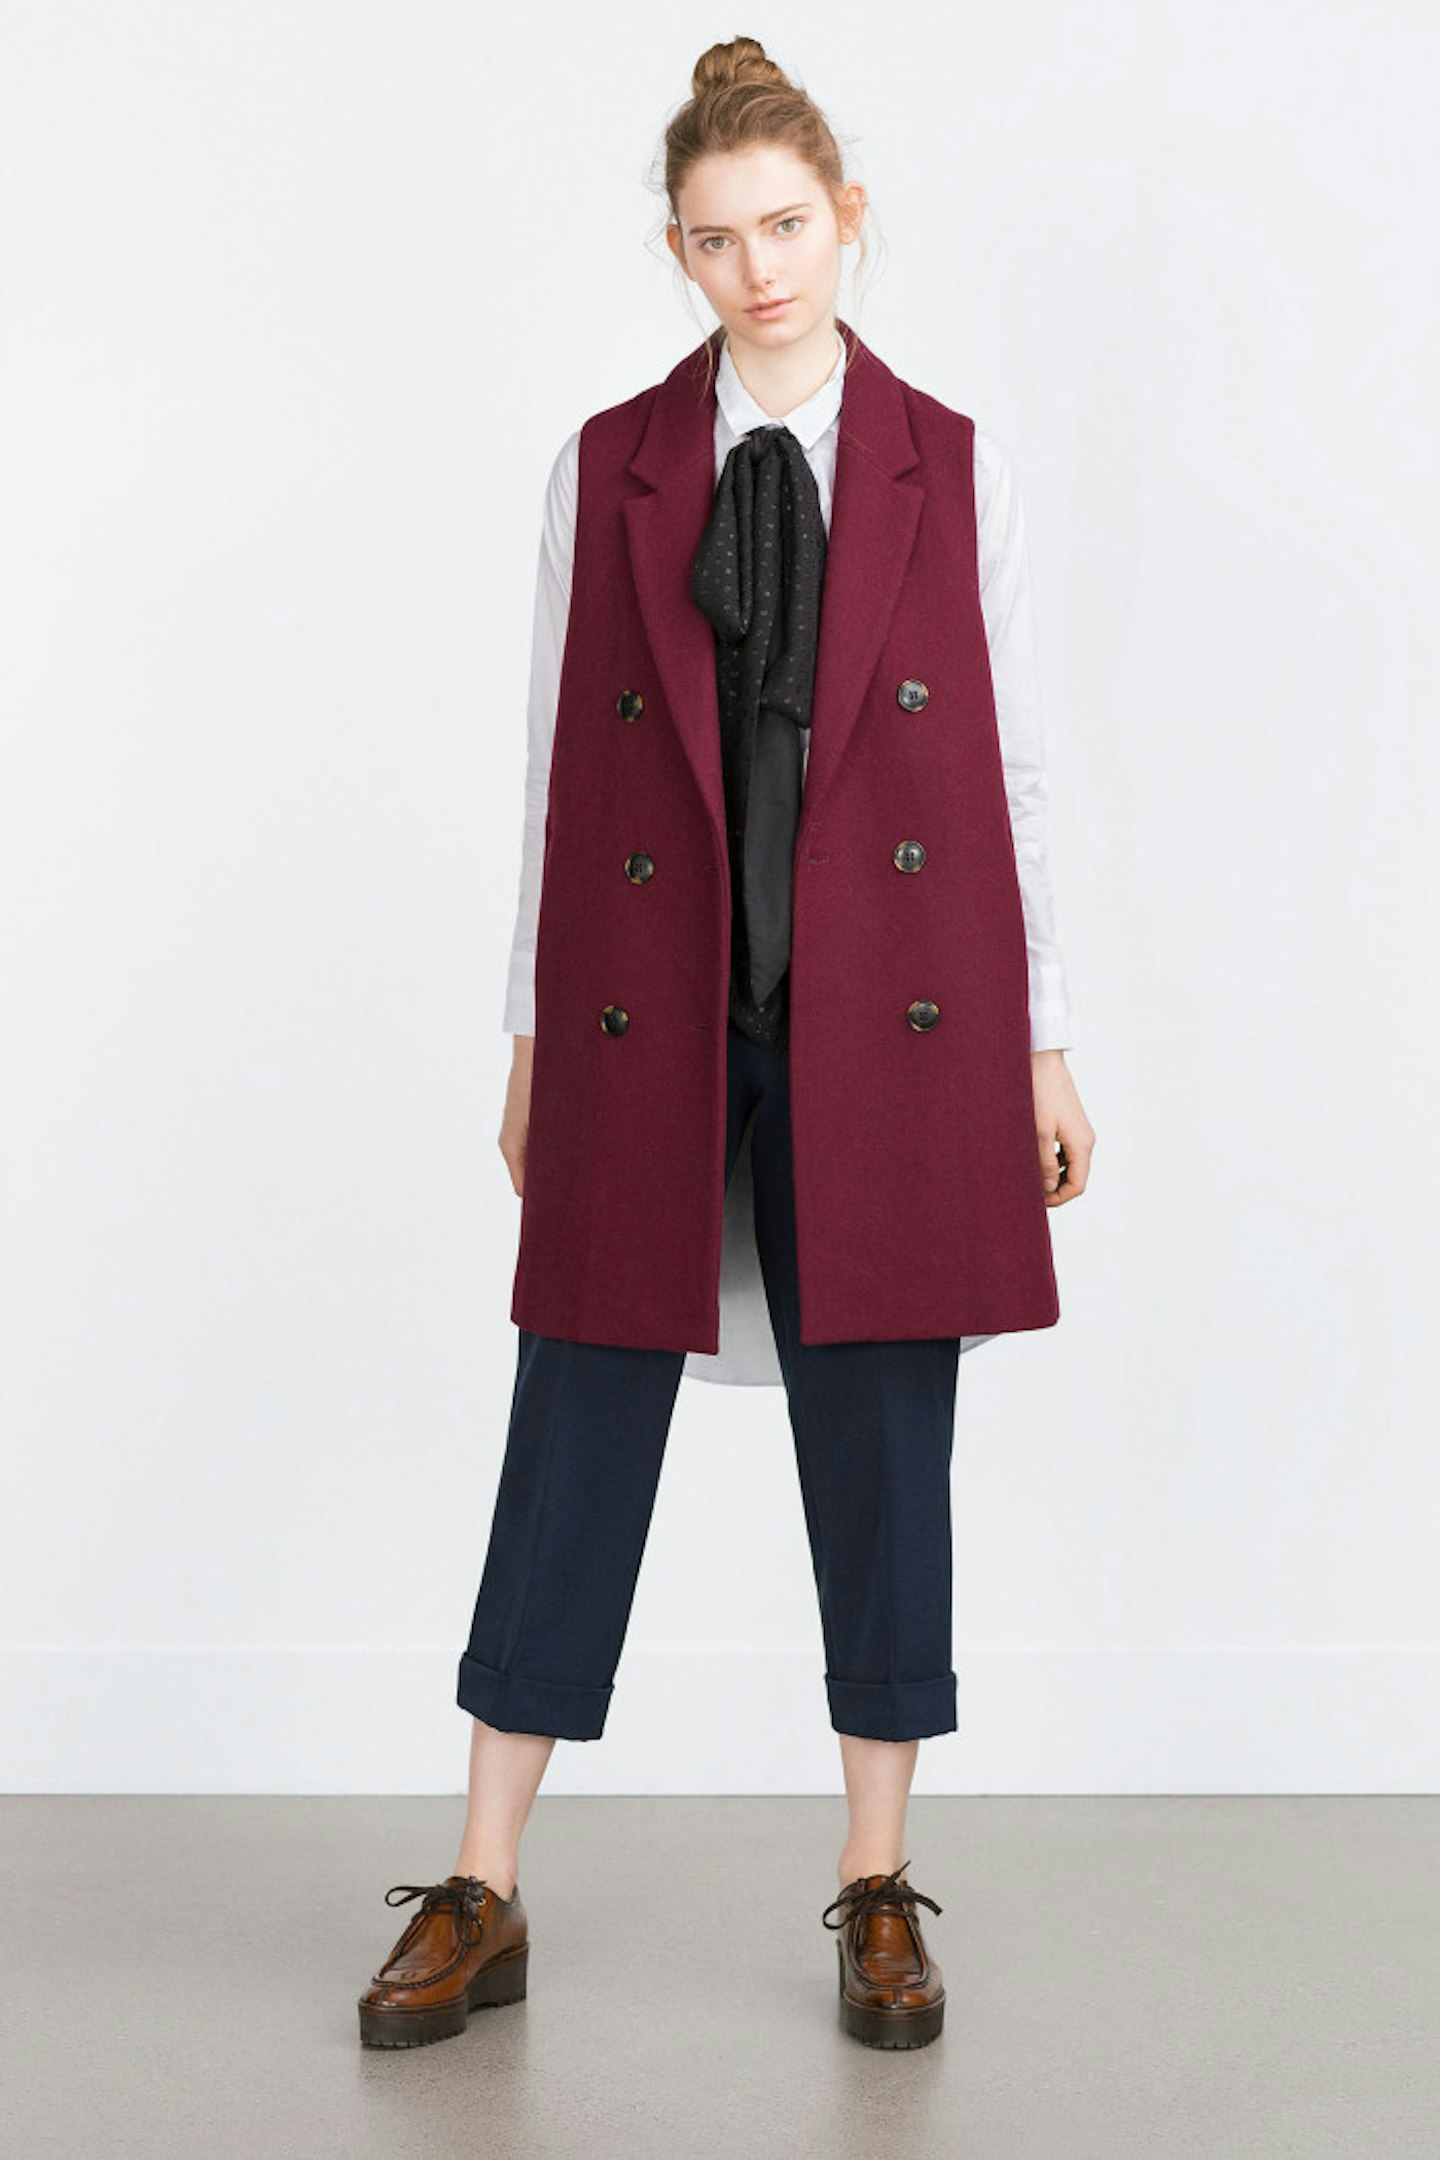 Zara Double Breasted Waistcoat £59.99